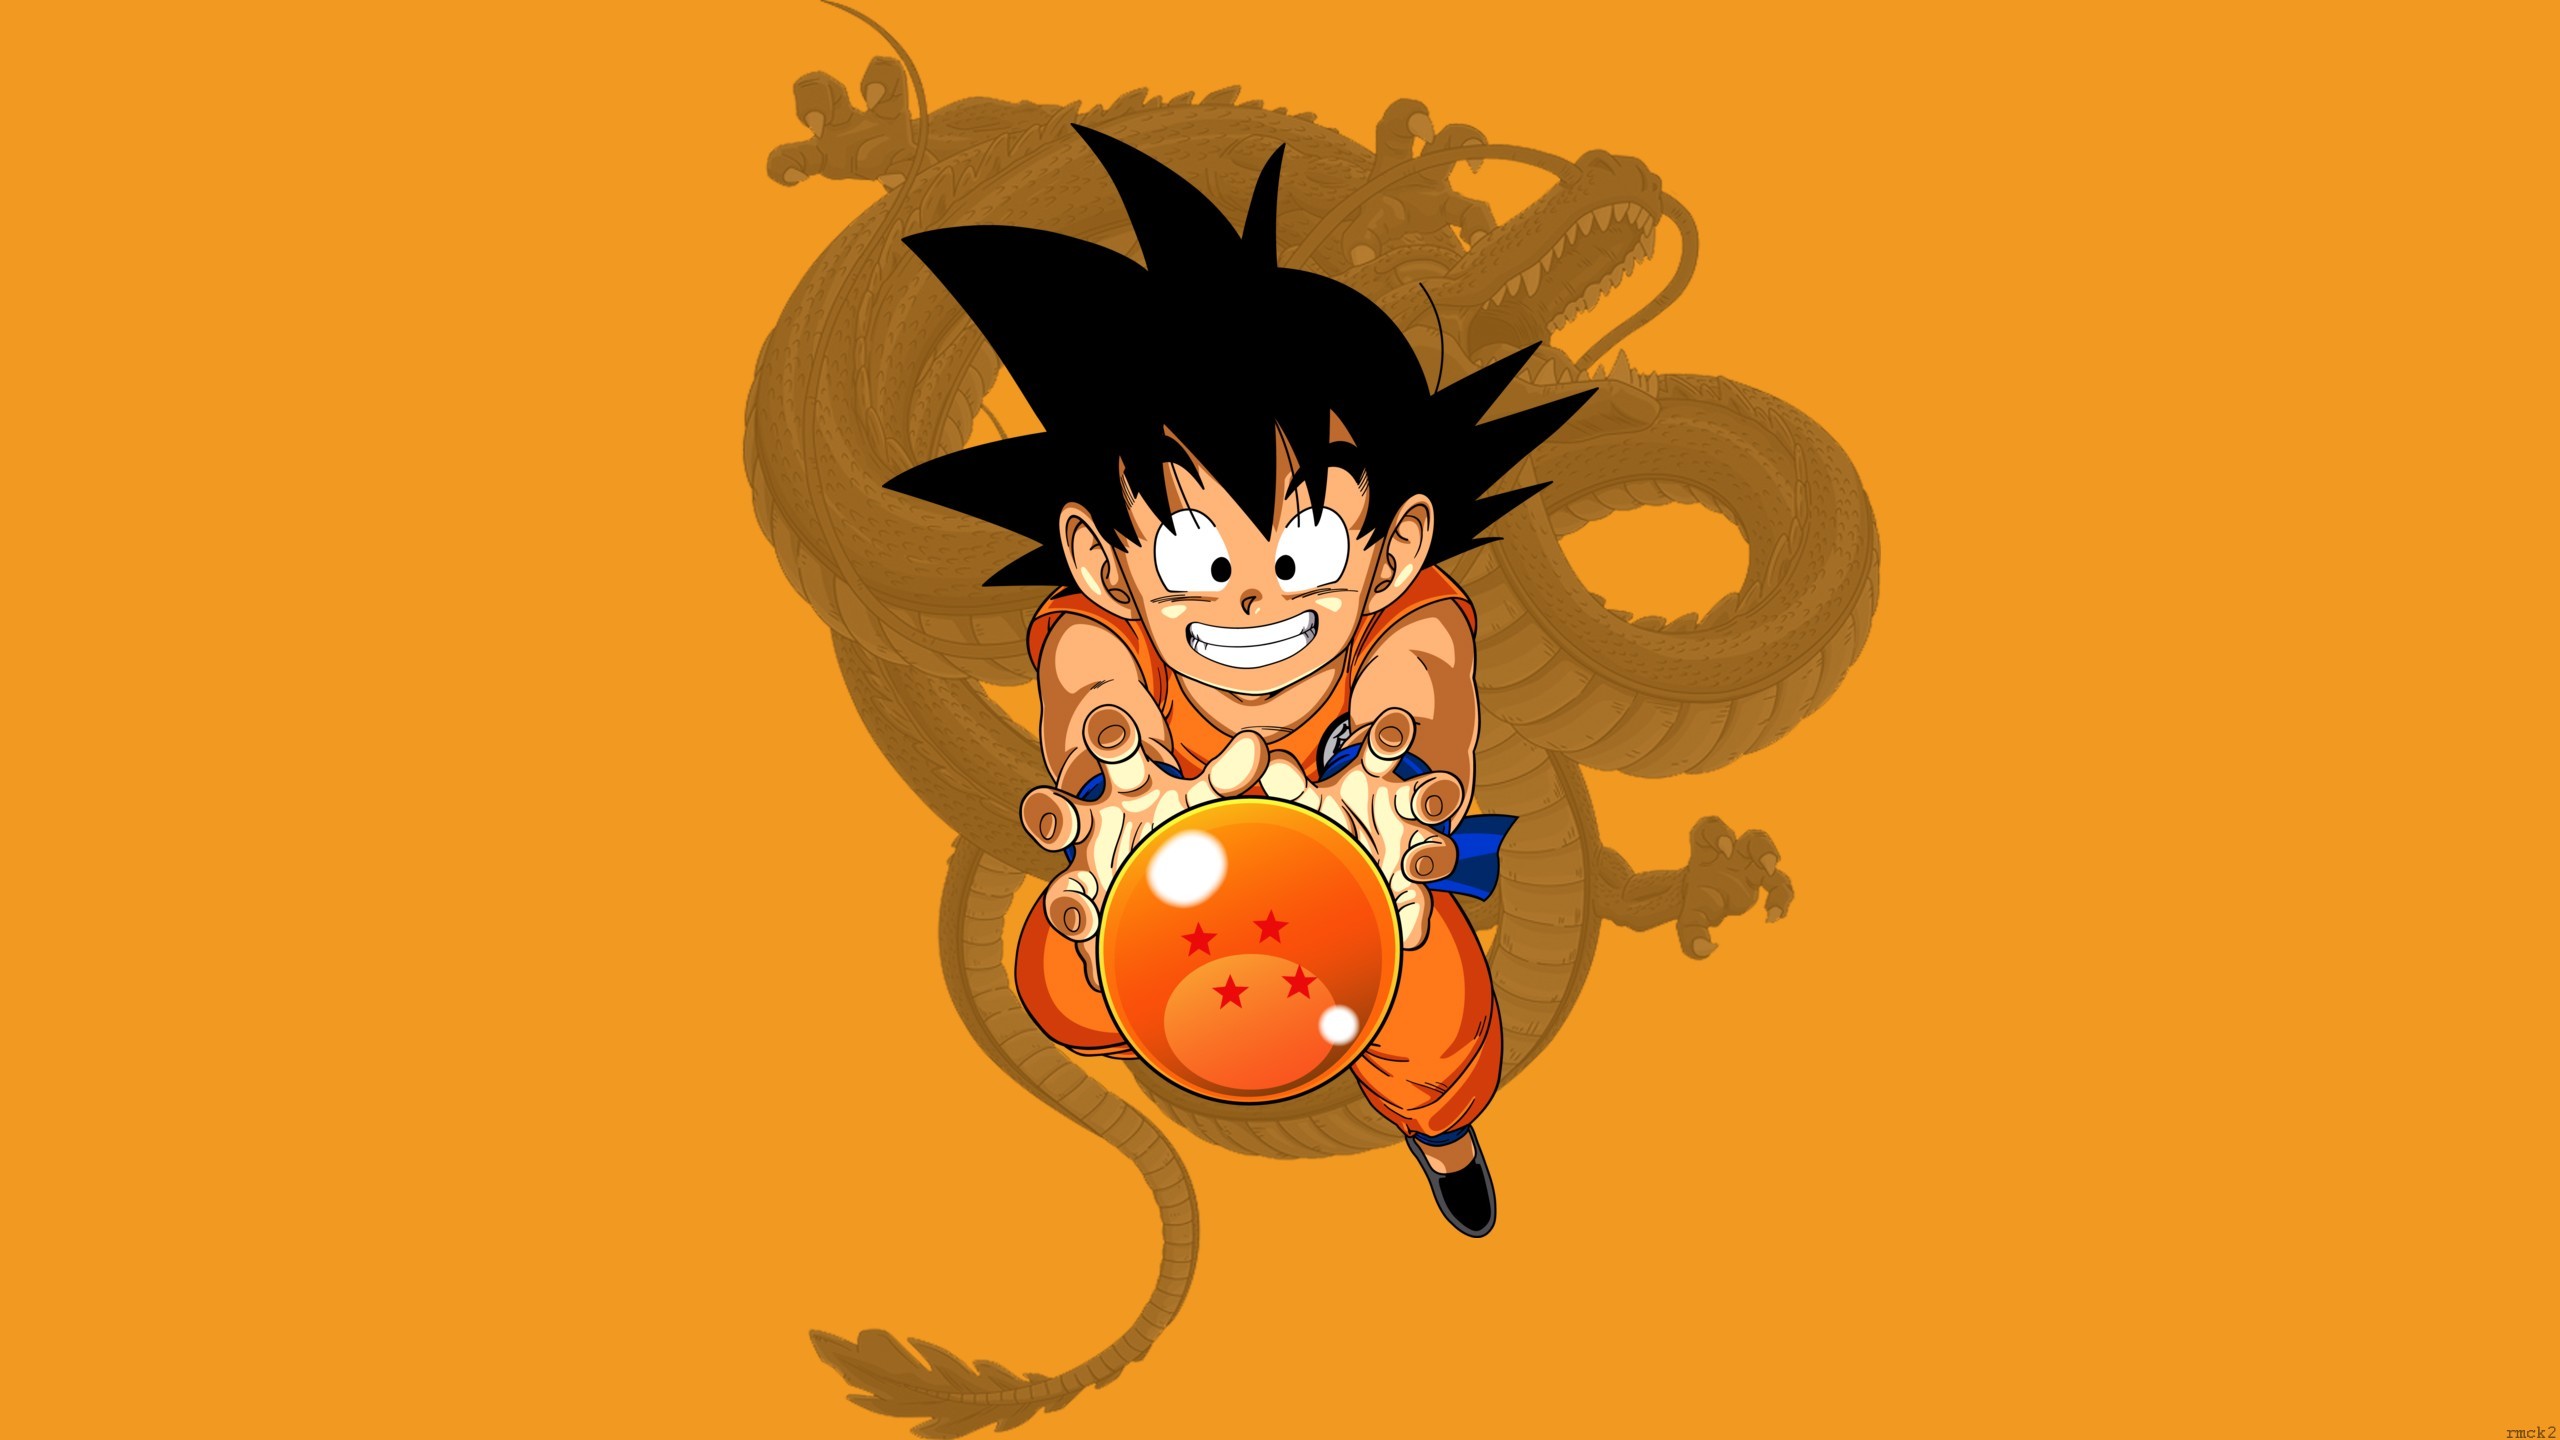 Kid Goku Dragon Ball Z Wallpaper, HD Anime 4K Wallpapers ...